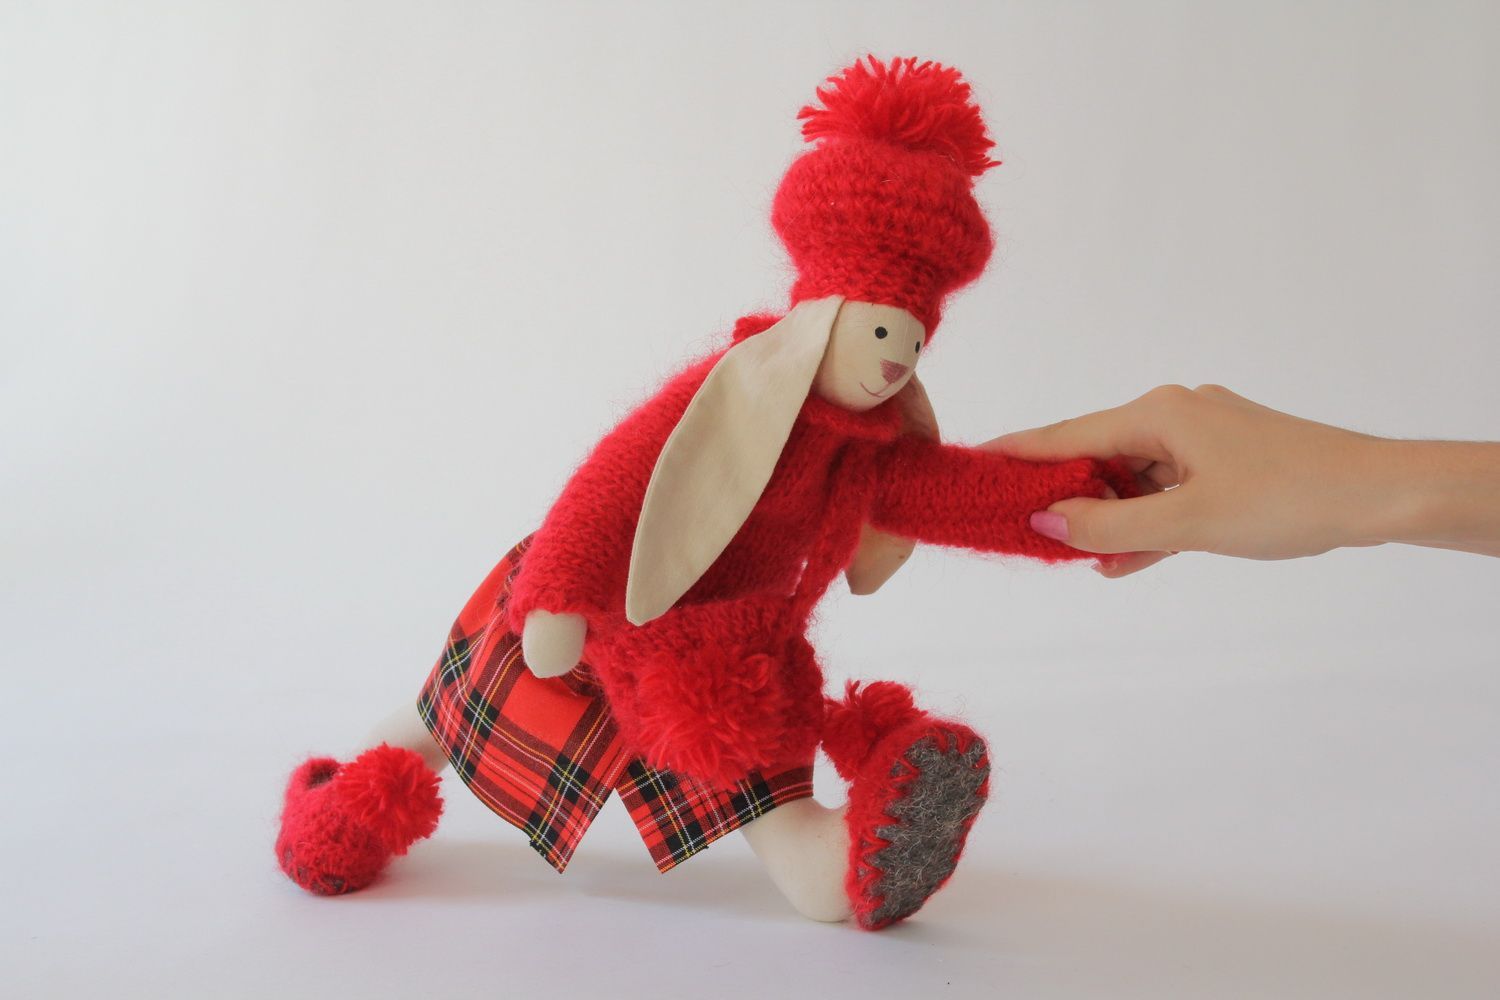 Textil Hase in schottischer Kleidung foto 4